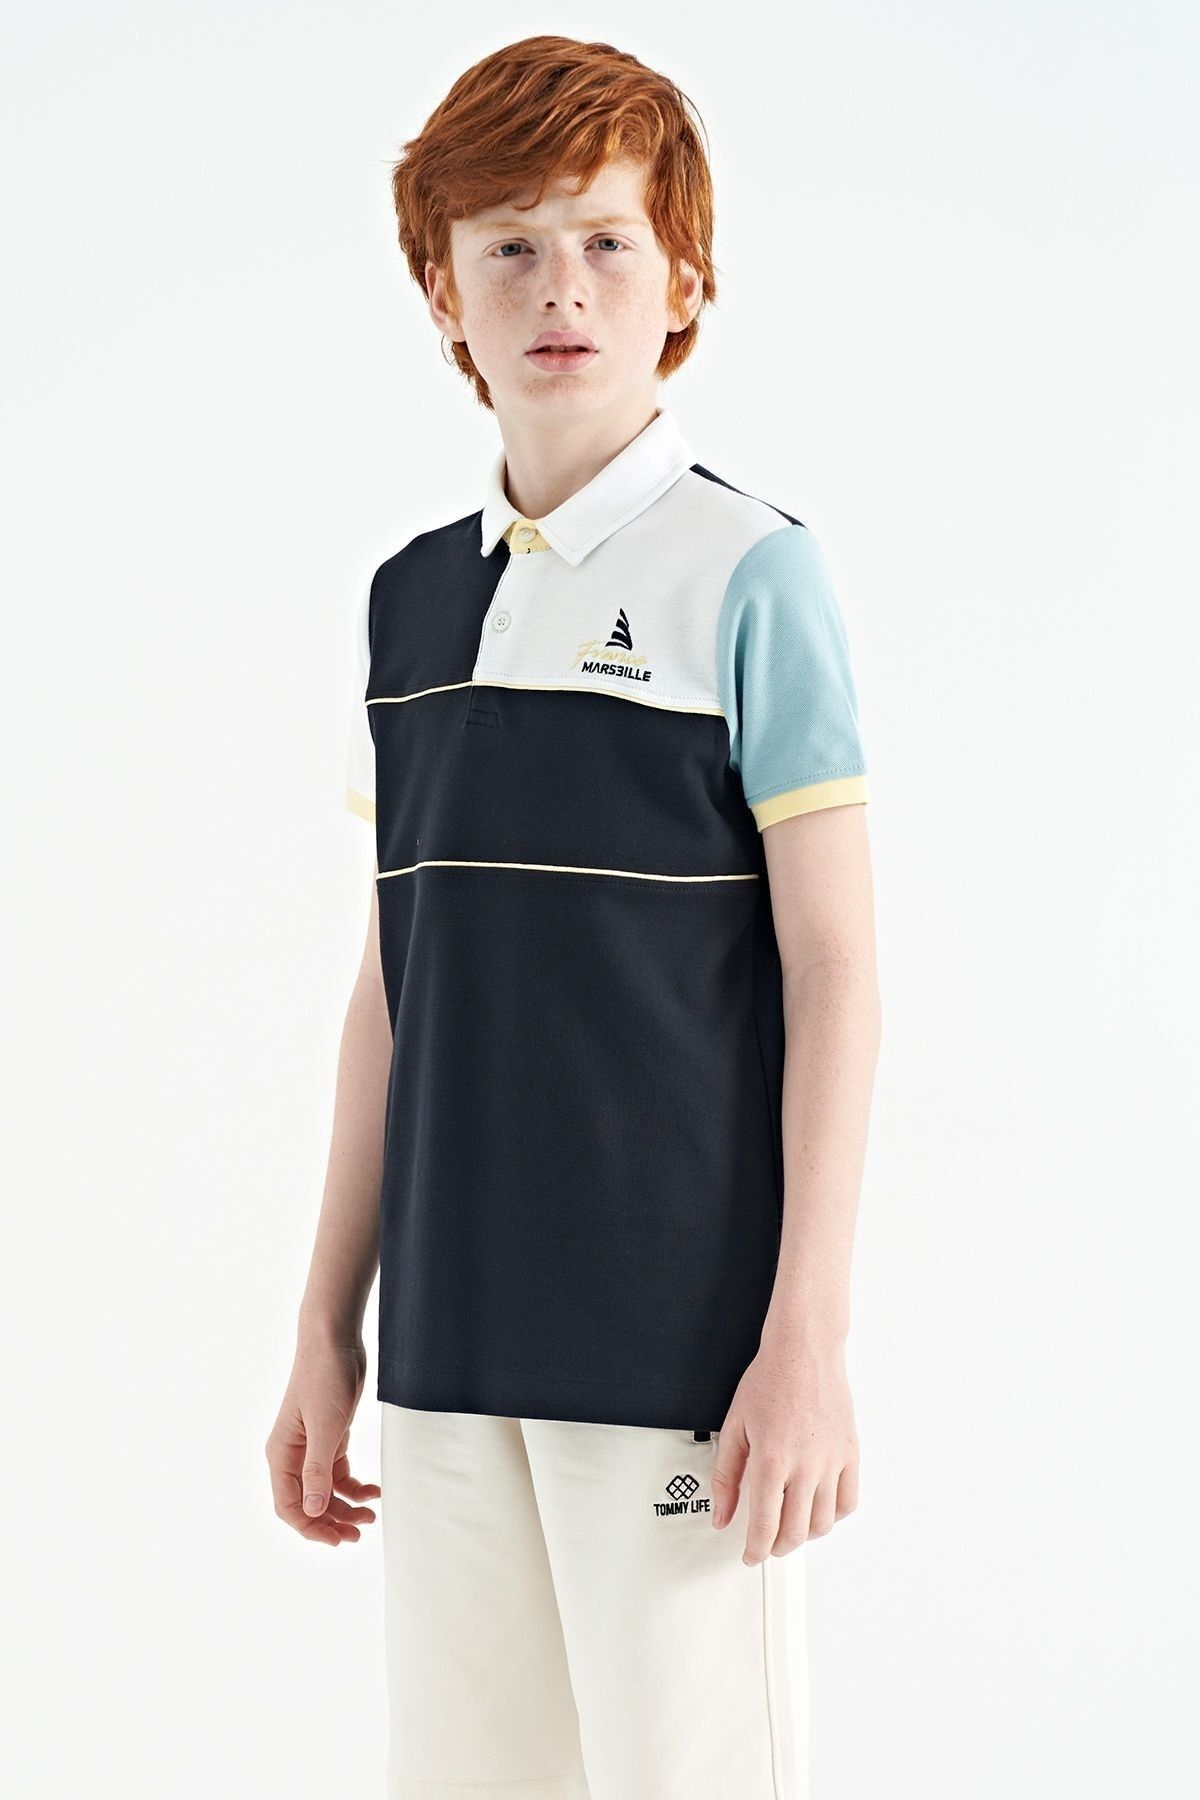 TOMMY LIFE Lacivert Renk Bloklu Nakış Yazı Detaylı Standart Kalıp Polo Yaka Erkek Çocuk T-shirt - 11109